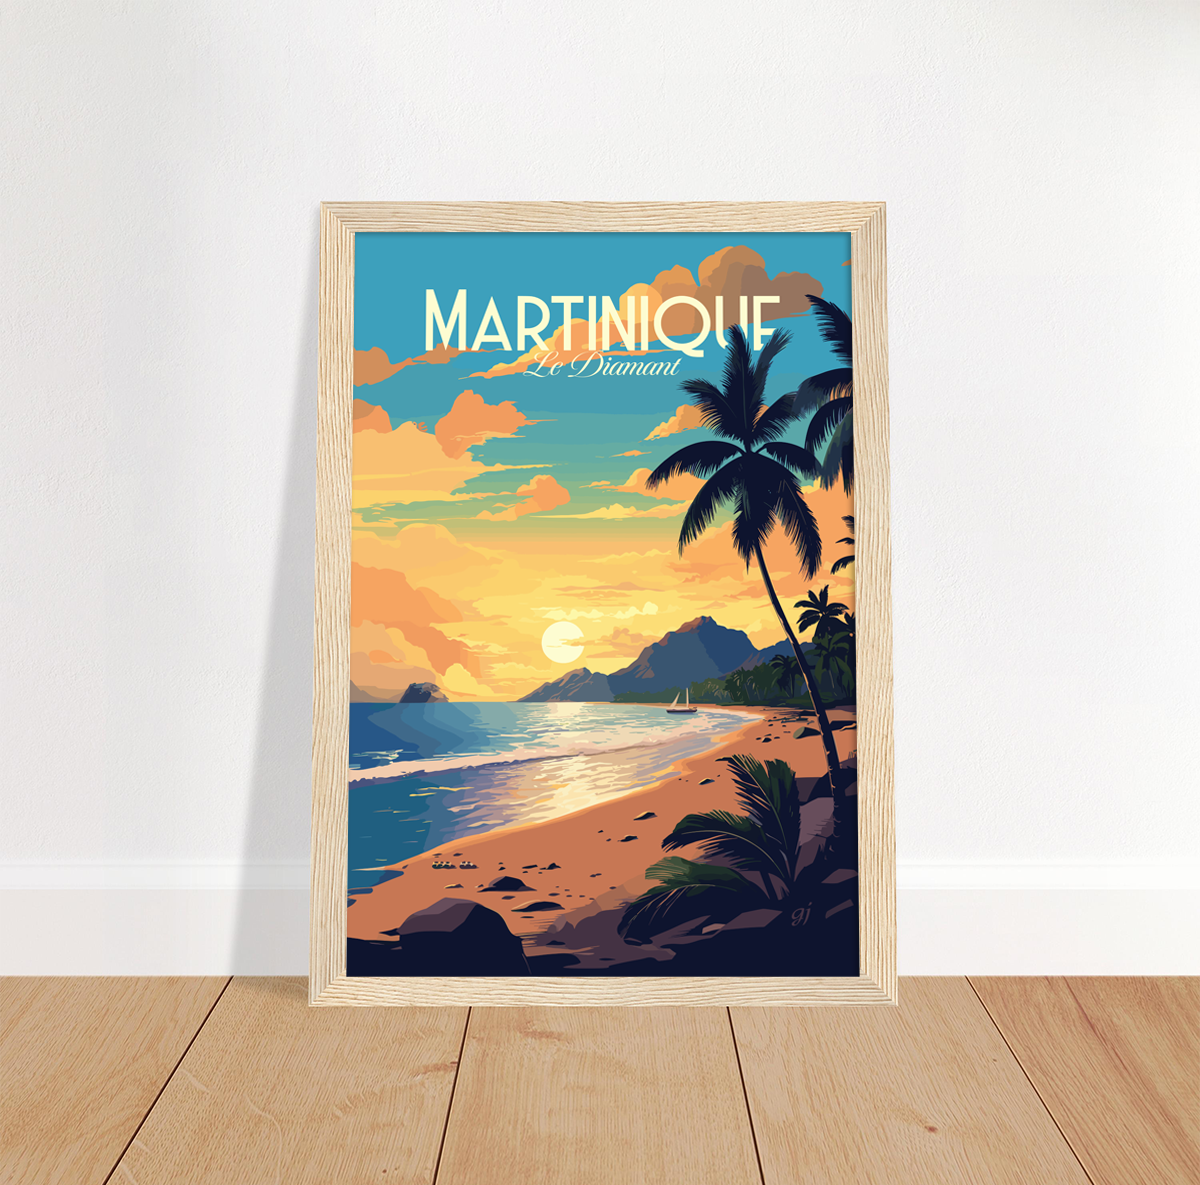 Martinique - Le Diamant poster by bon voyage design